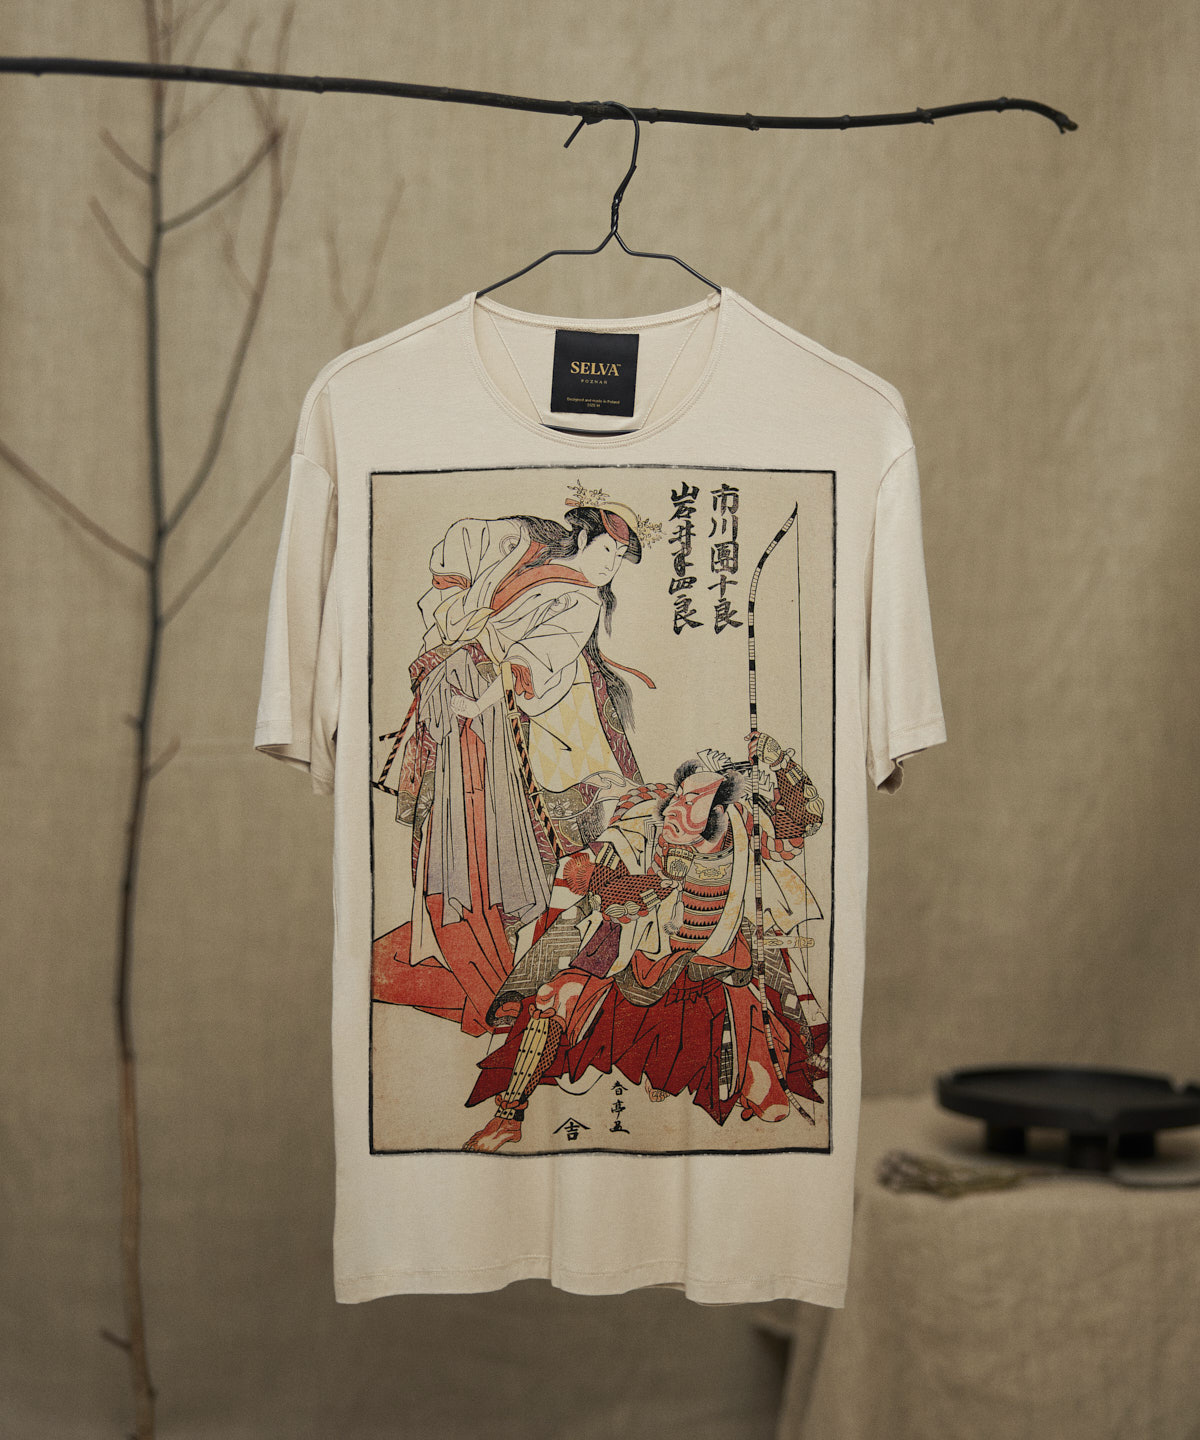 Katsukawa Shuntei no.54 hummus t-shirt men